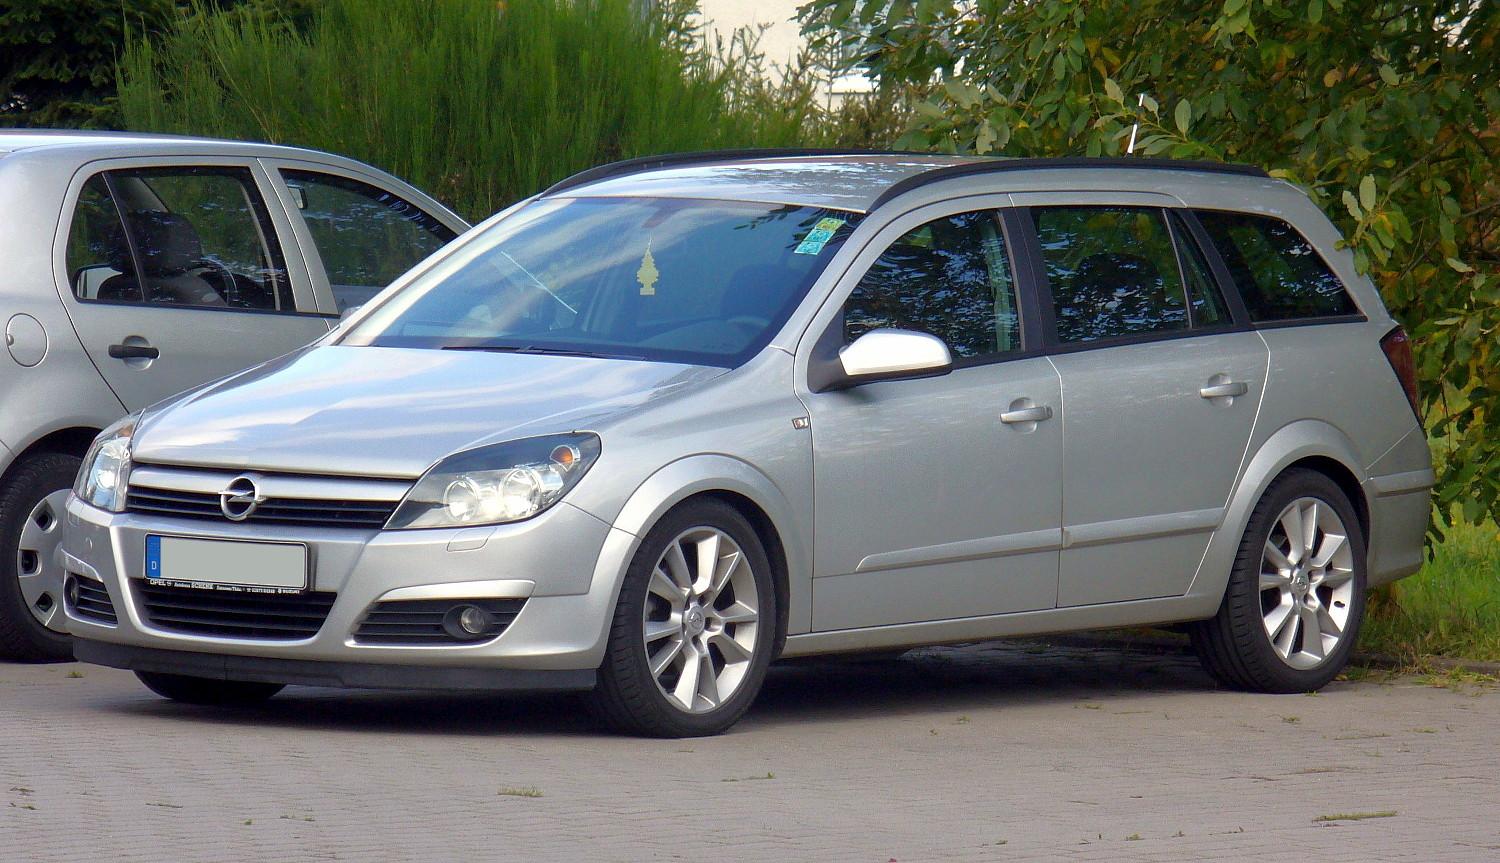 File:Opel Astra H Caravan.JPG